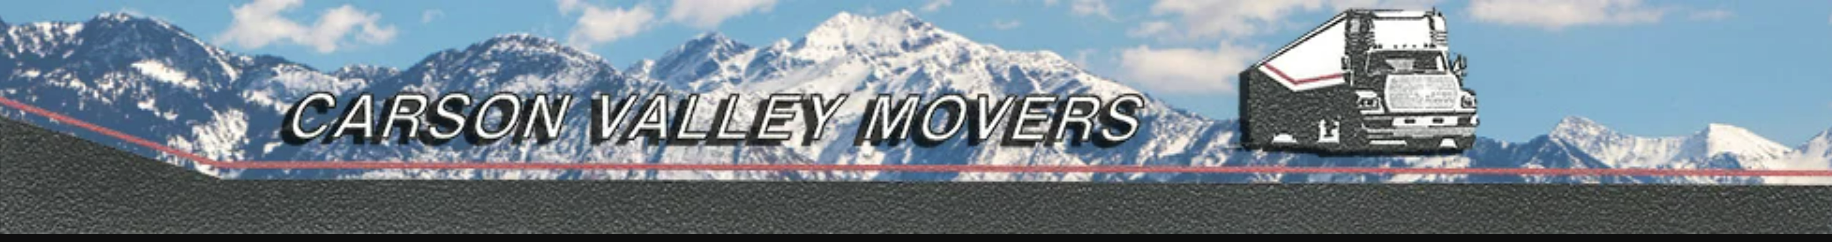 Carson Valley Movers company logo